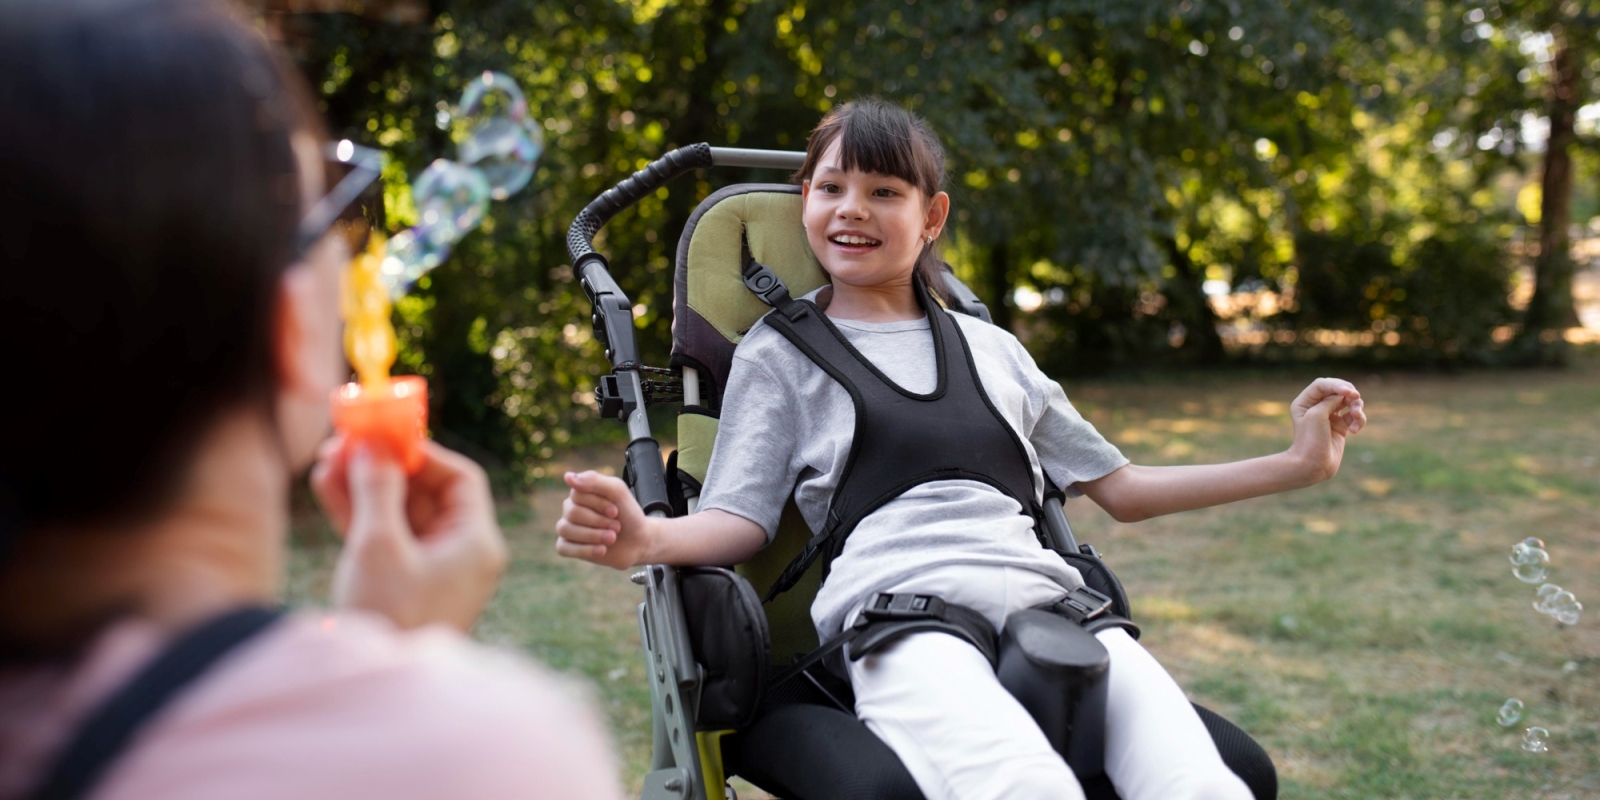 Αξιοποίηση Υποστηρικτικής Τεχνολογίας για στήριξη παιδιών με αναπηρία